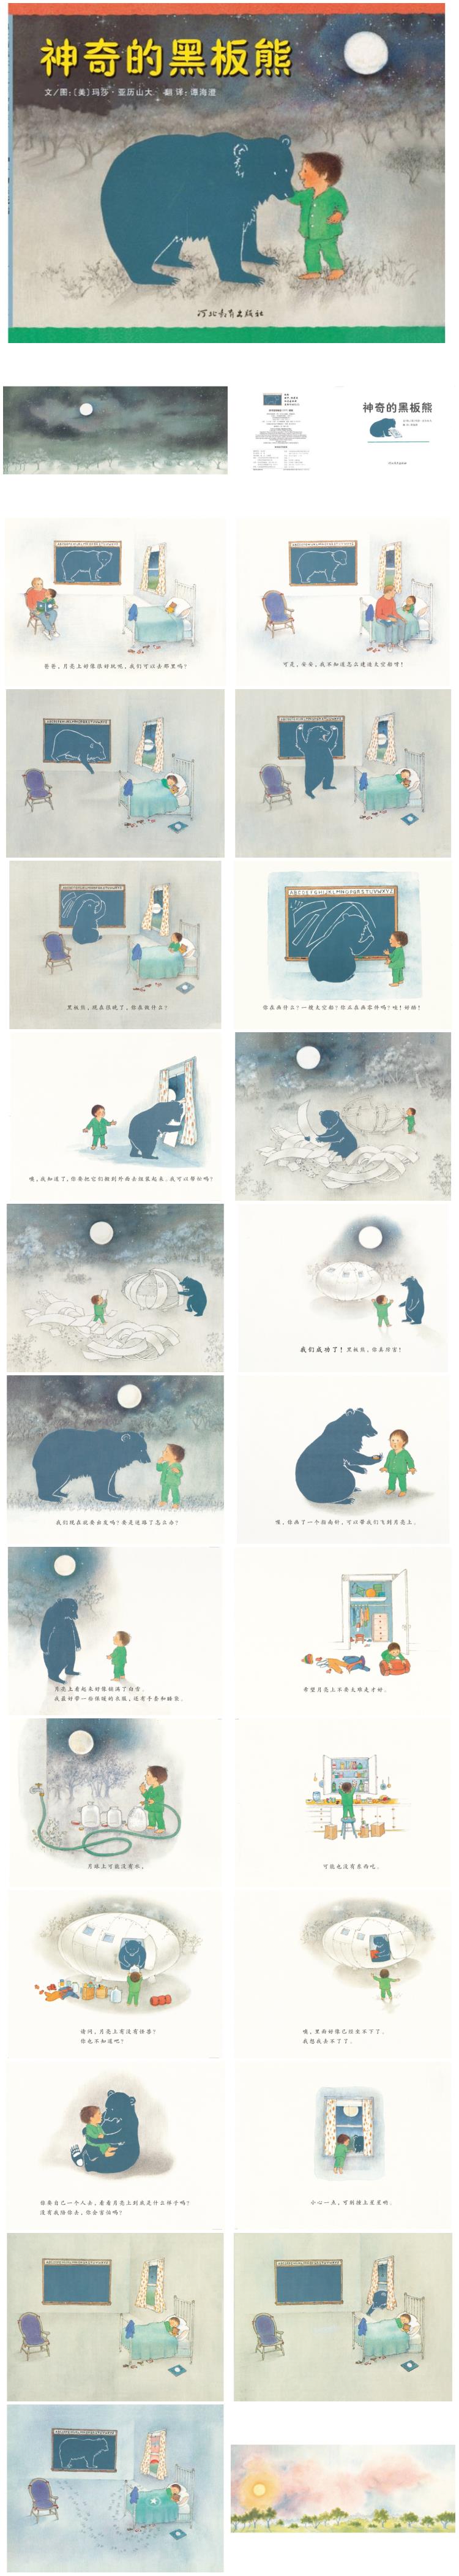 《神奇的黑板熊》童话绘本儿童故事PPT